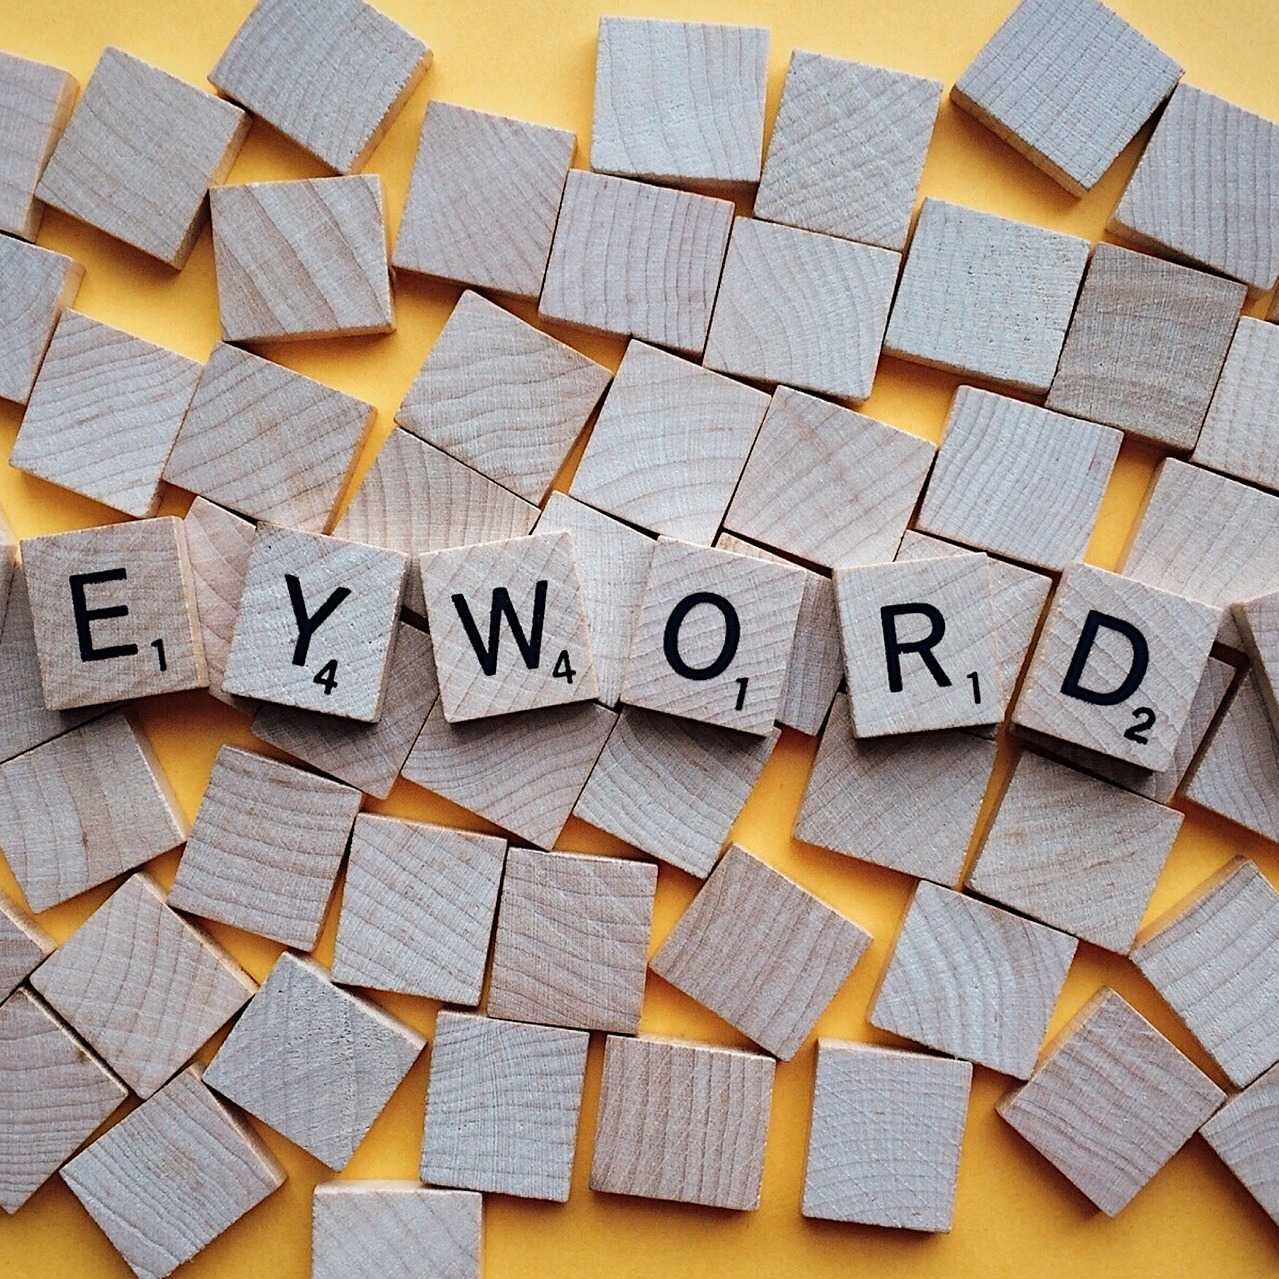 Der englische Begriff Keyword bezeichnet ein oder mehrere Wörter, die Benutzer in Suchmaschinen eingeben, um die für sie interessanten Websites zu finden und zu konsultieren